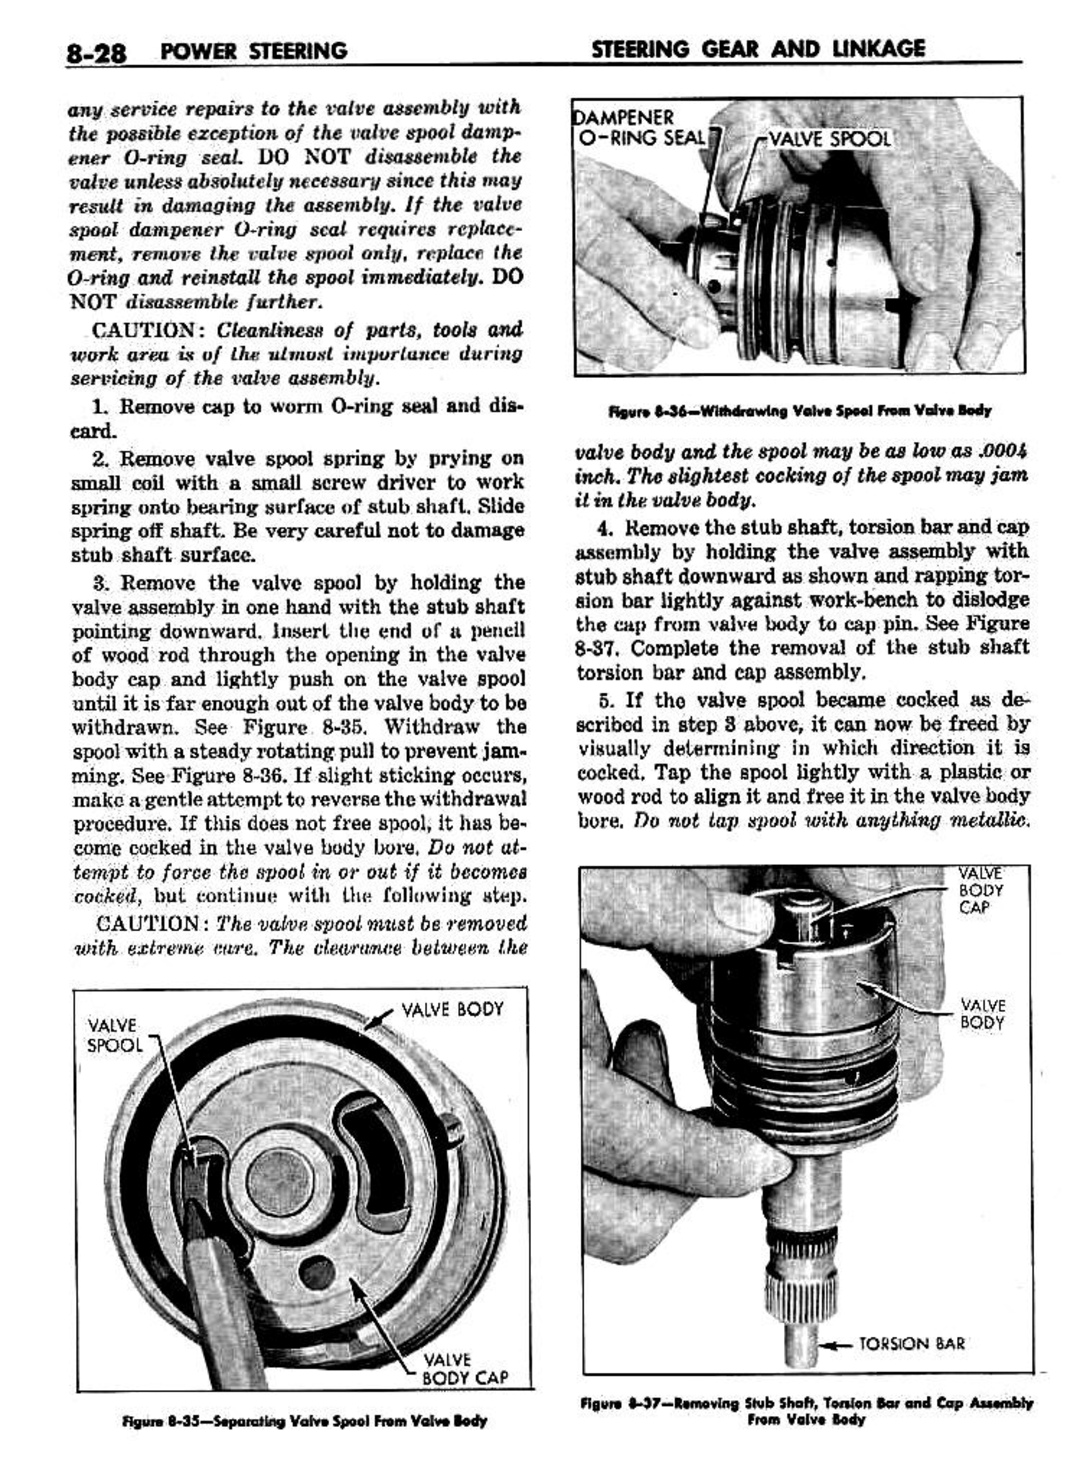 n_09 1959 Buick Shop Manual - Steering-028-028.jpg